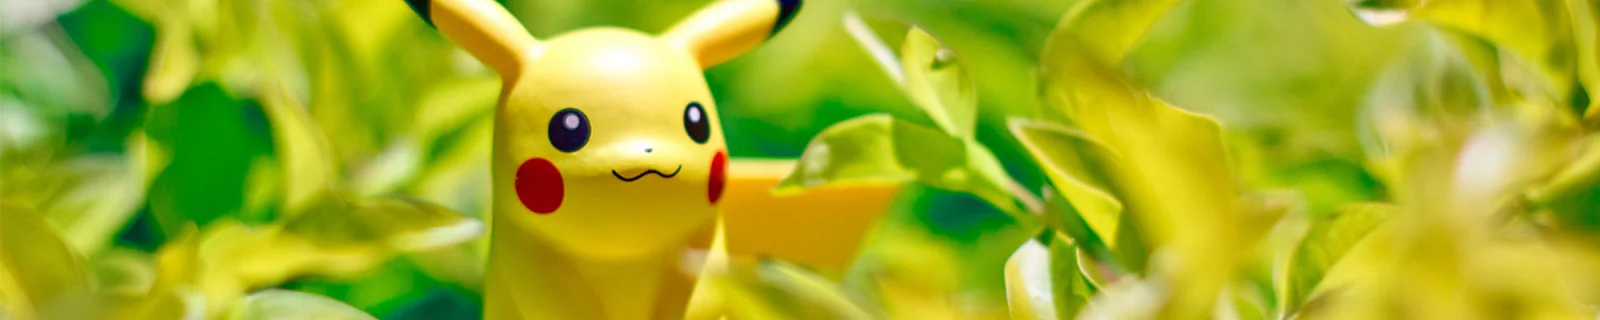 日本玩家用日亚推断《pokemon GO》发售日